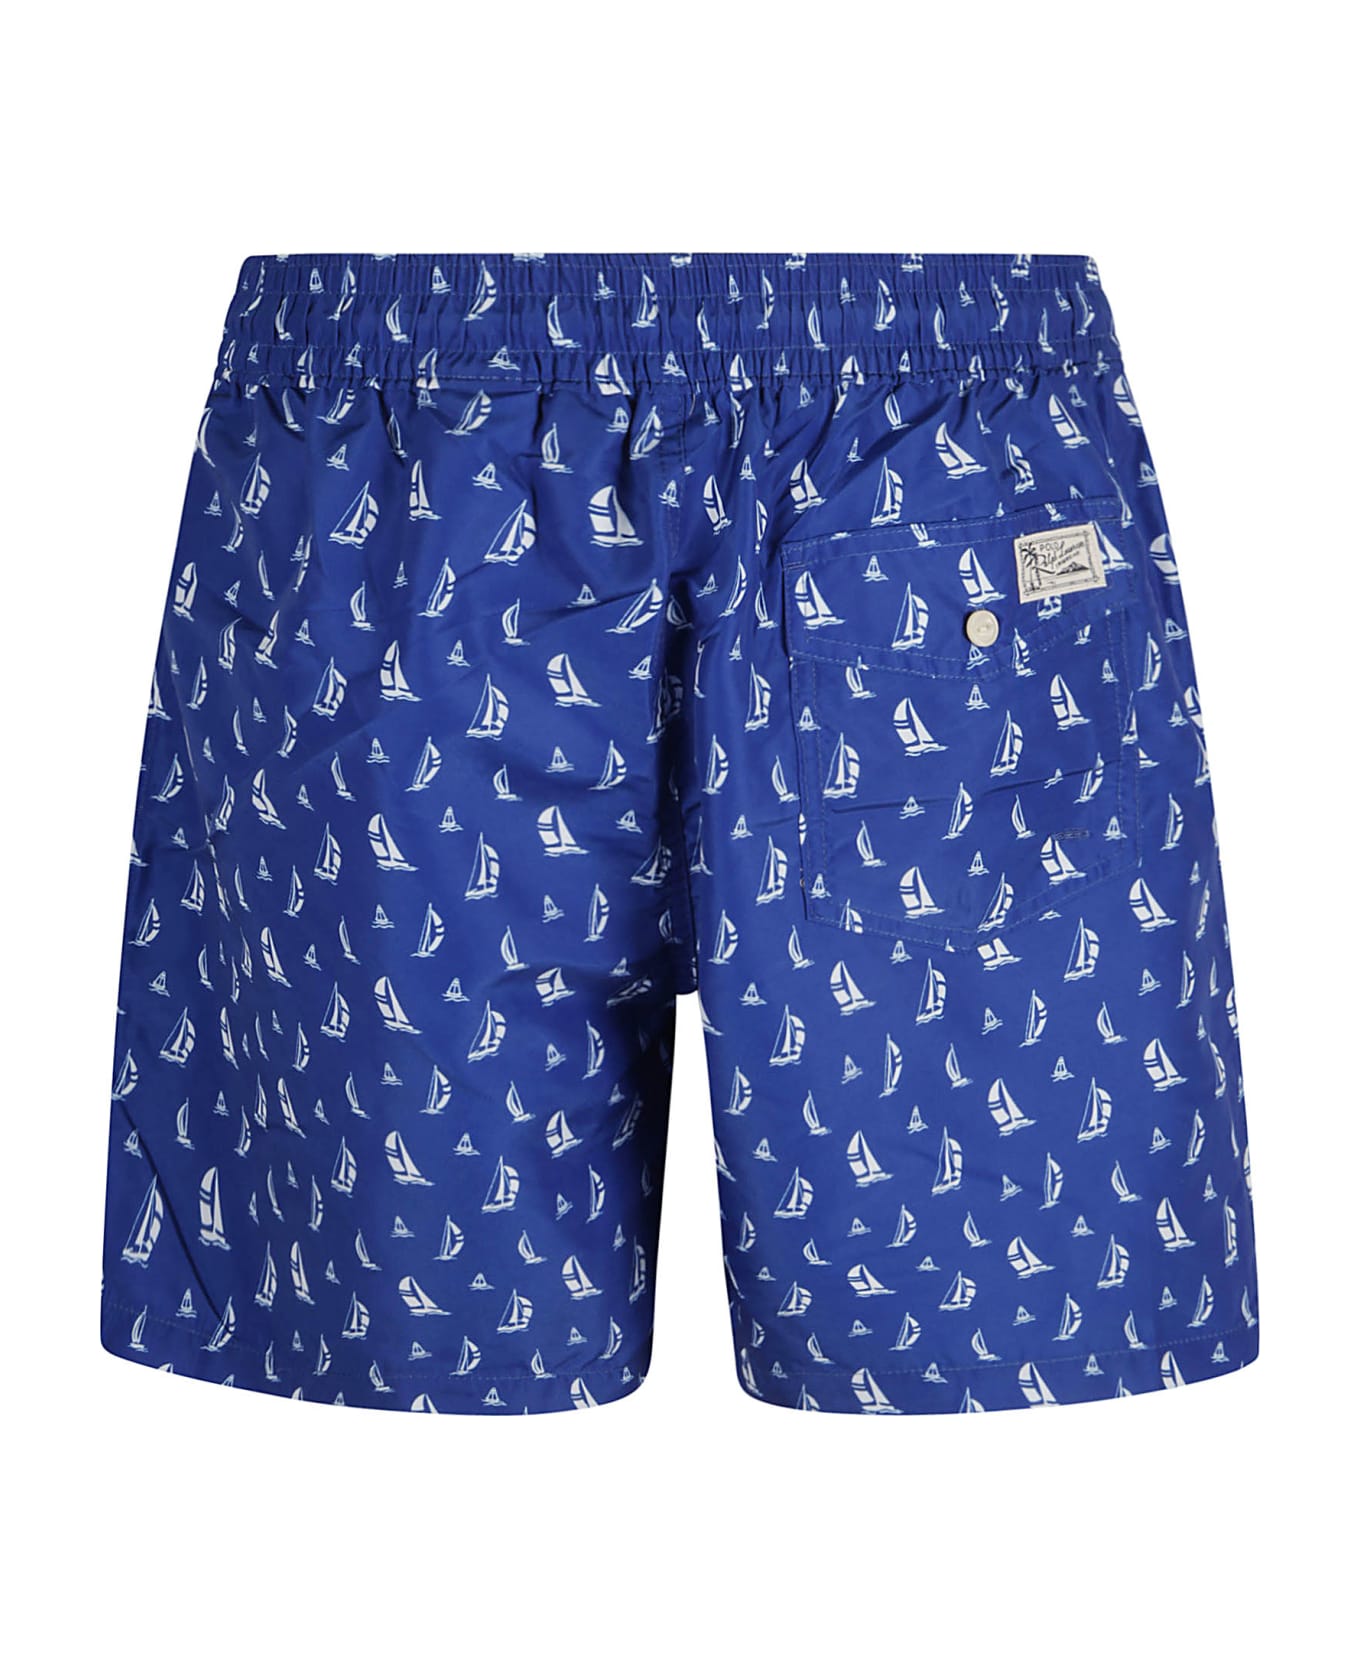 Ralph Lauren Sail Printed Shorts - Blue